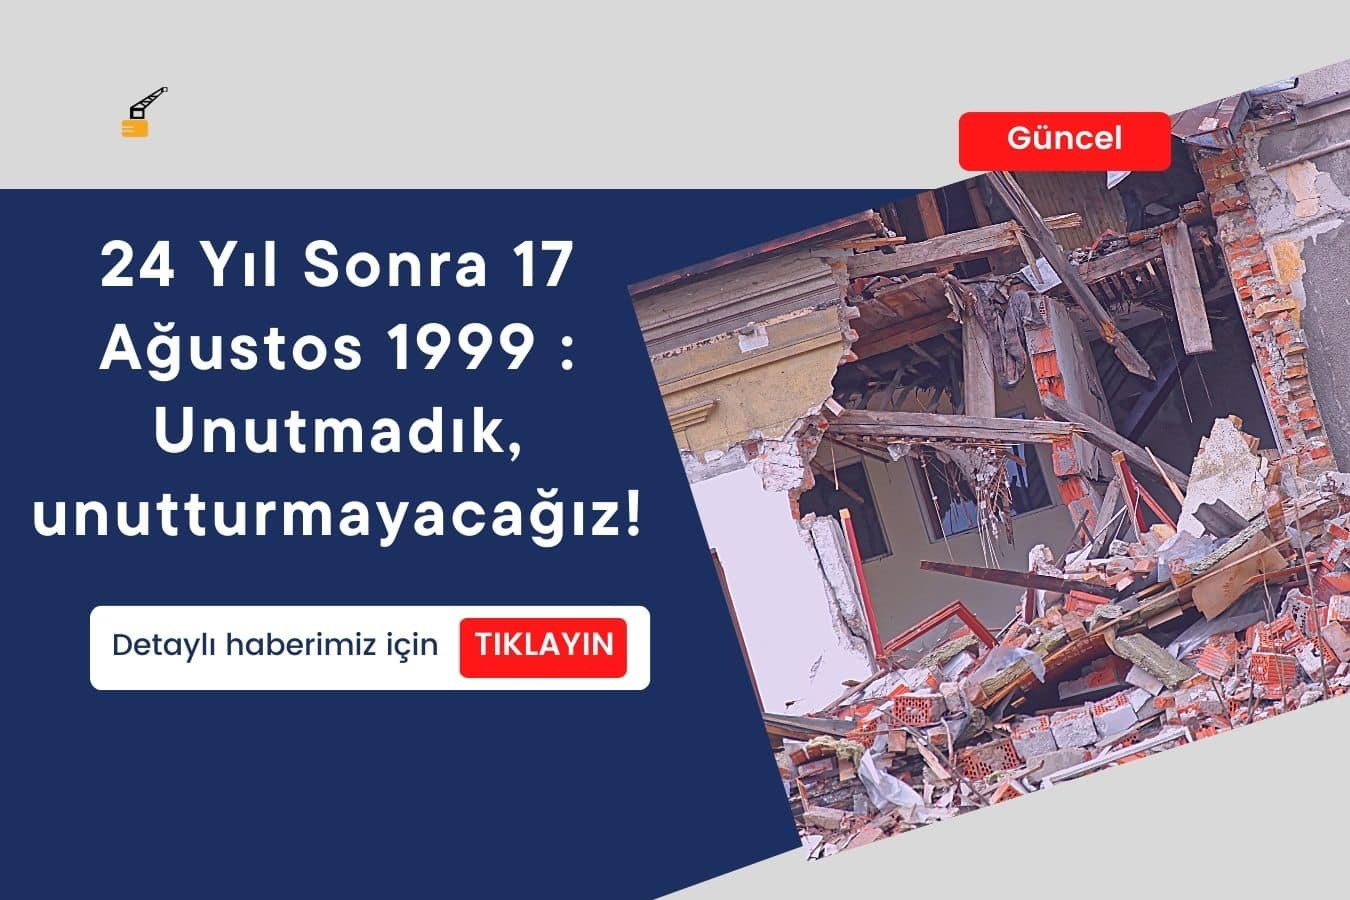 24 Yıl Sonra 17 Ağustos 1999 : Unutmadık, unutturmayacağız!